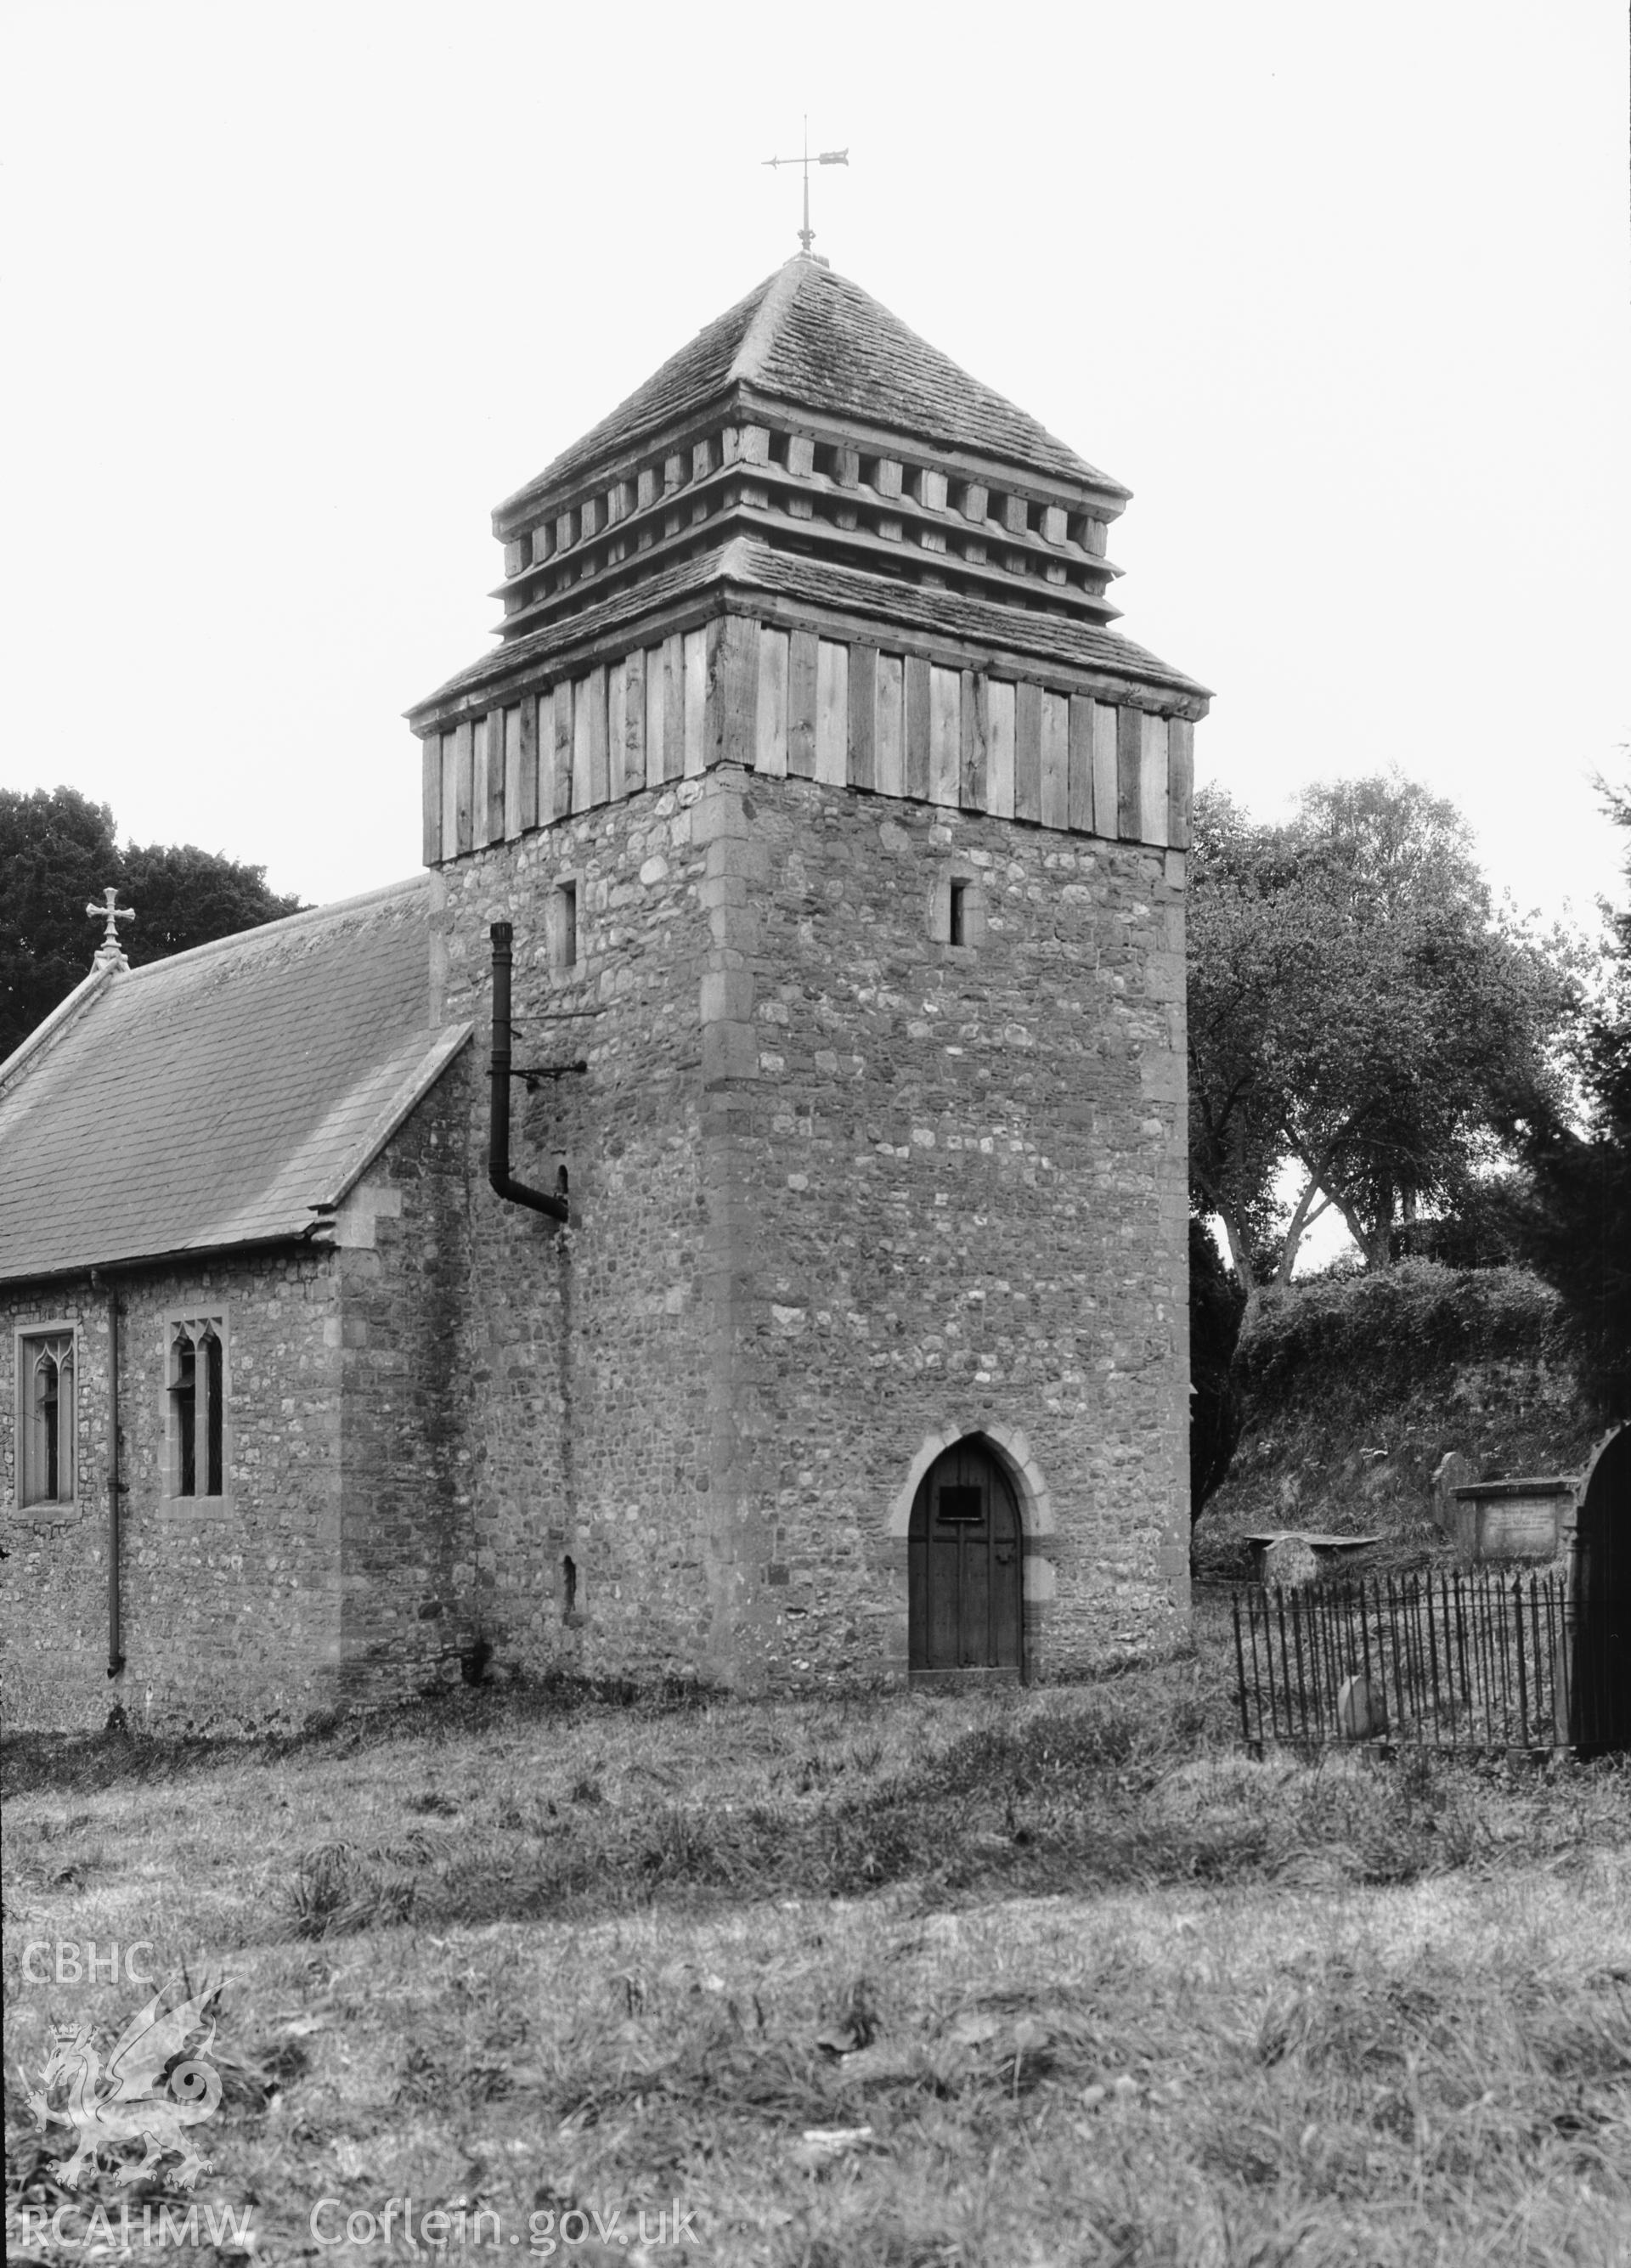 The tower at Llanddewi Rhydderch Church.